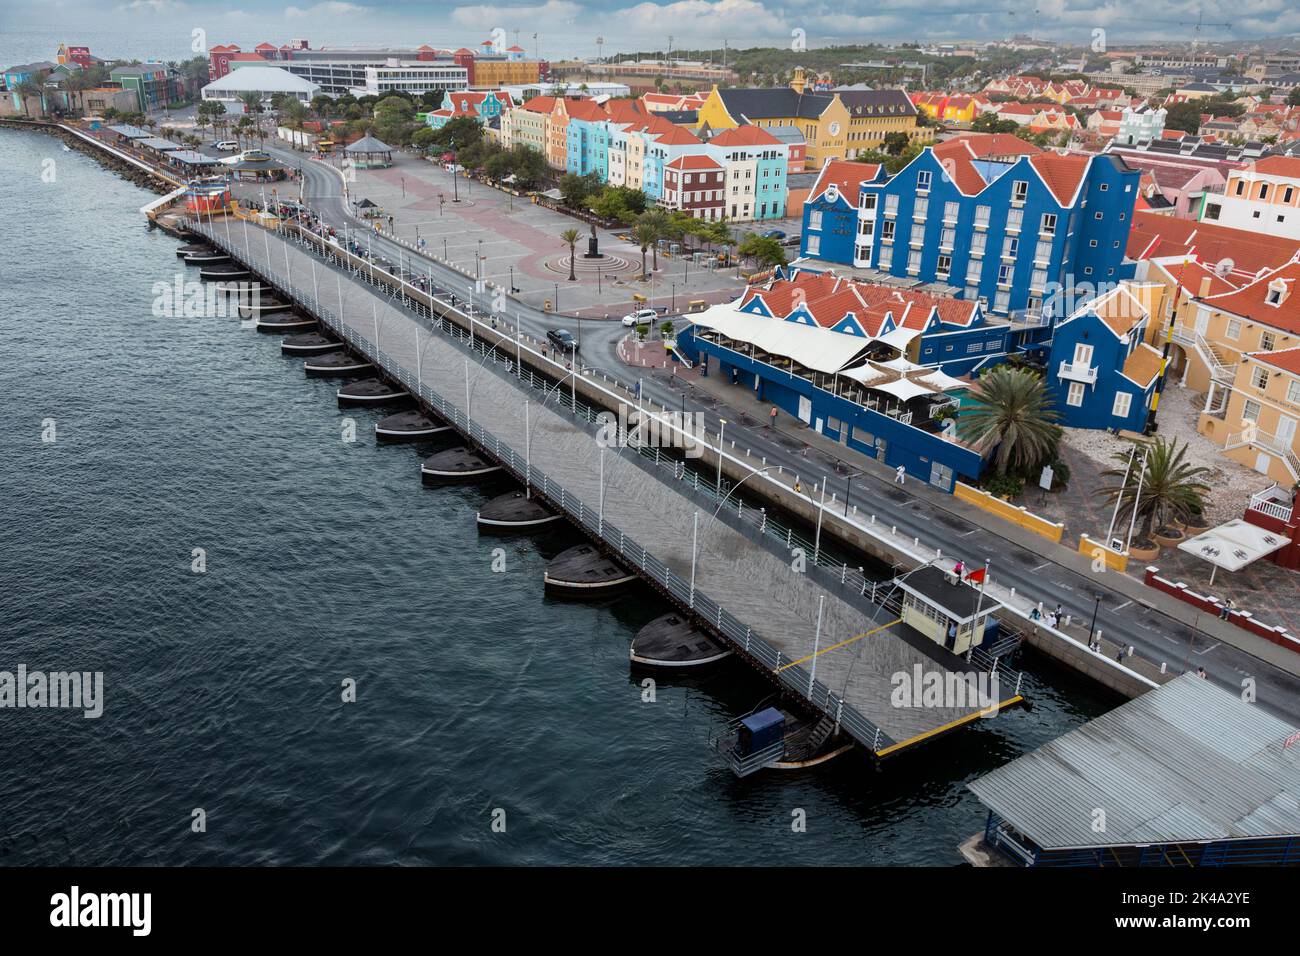 Willemstad, Curacao, Kleinen Antillen. Königin Emma Brücke offen für Schiff zu übergeben. Stockfoto